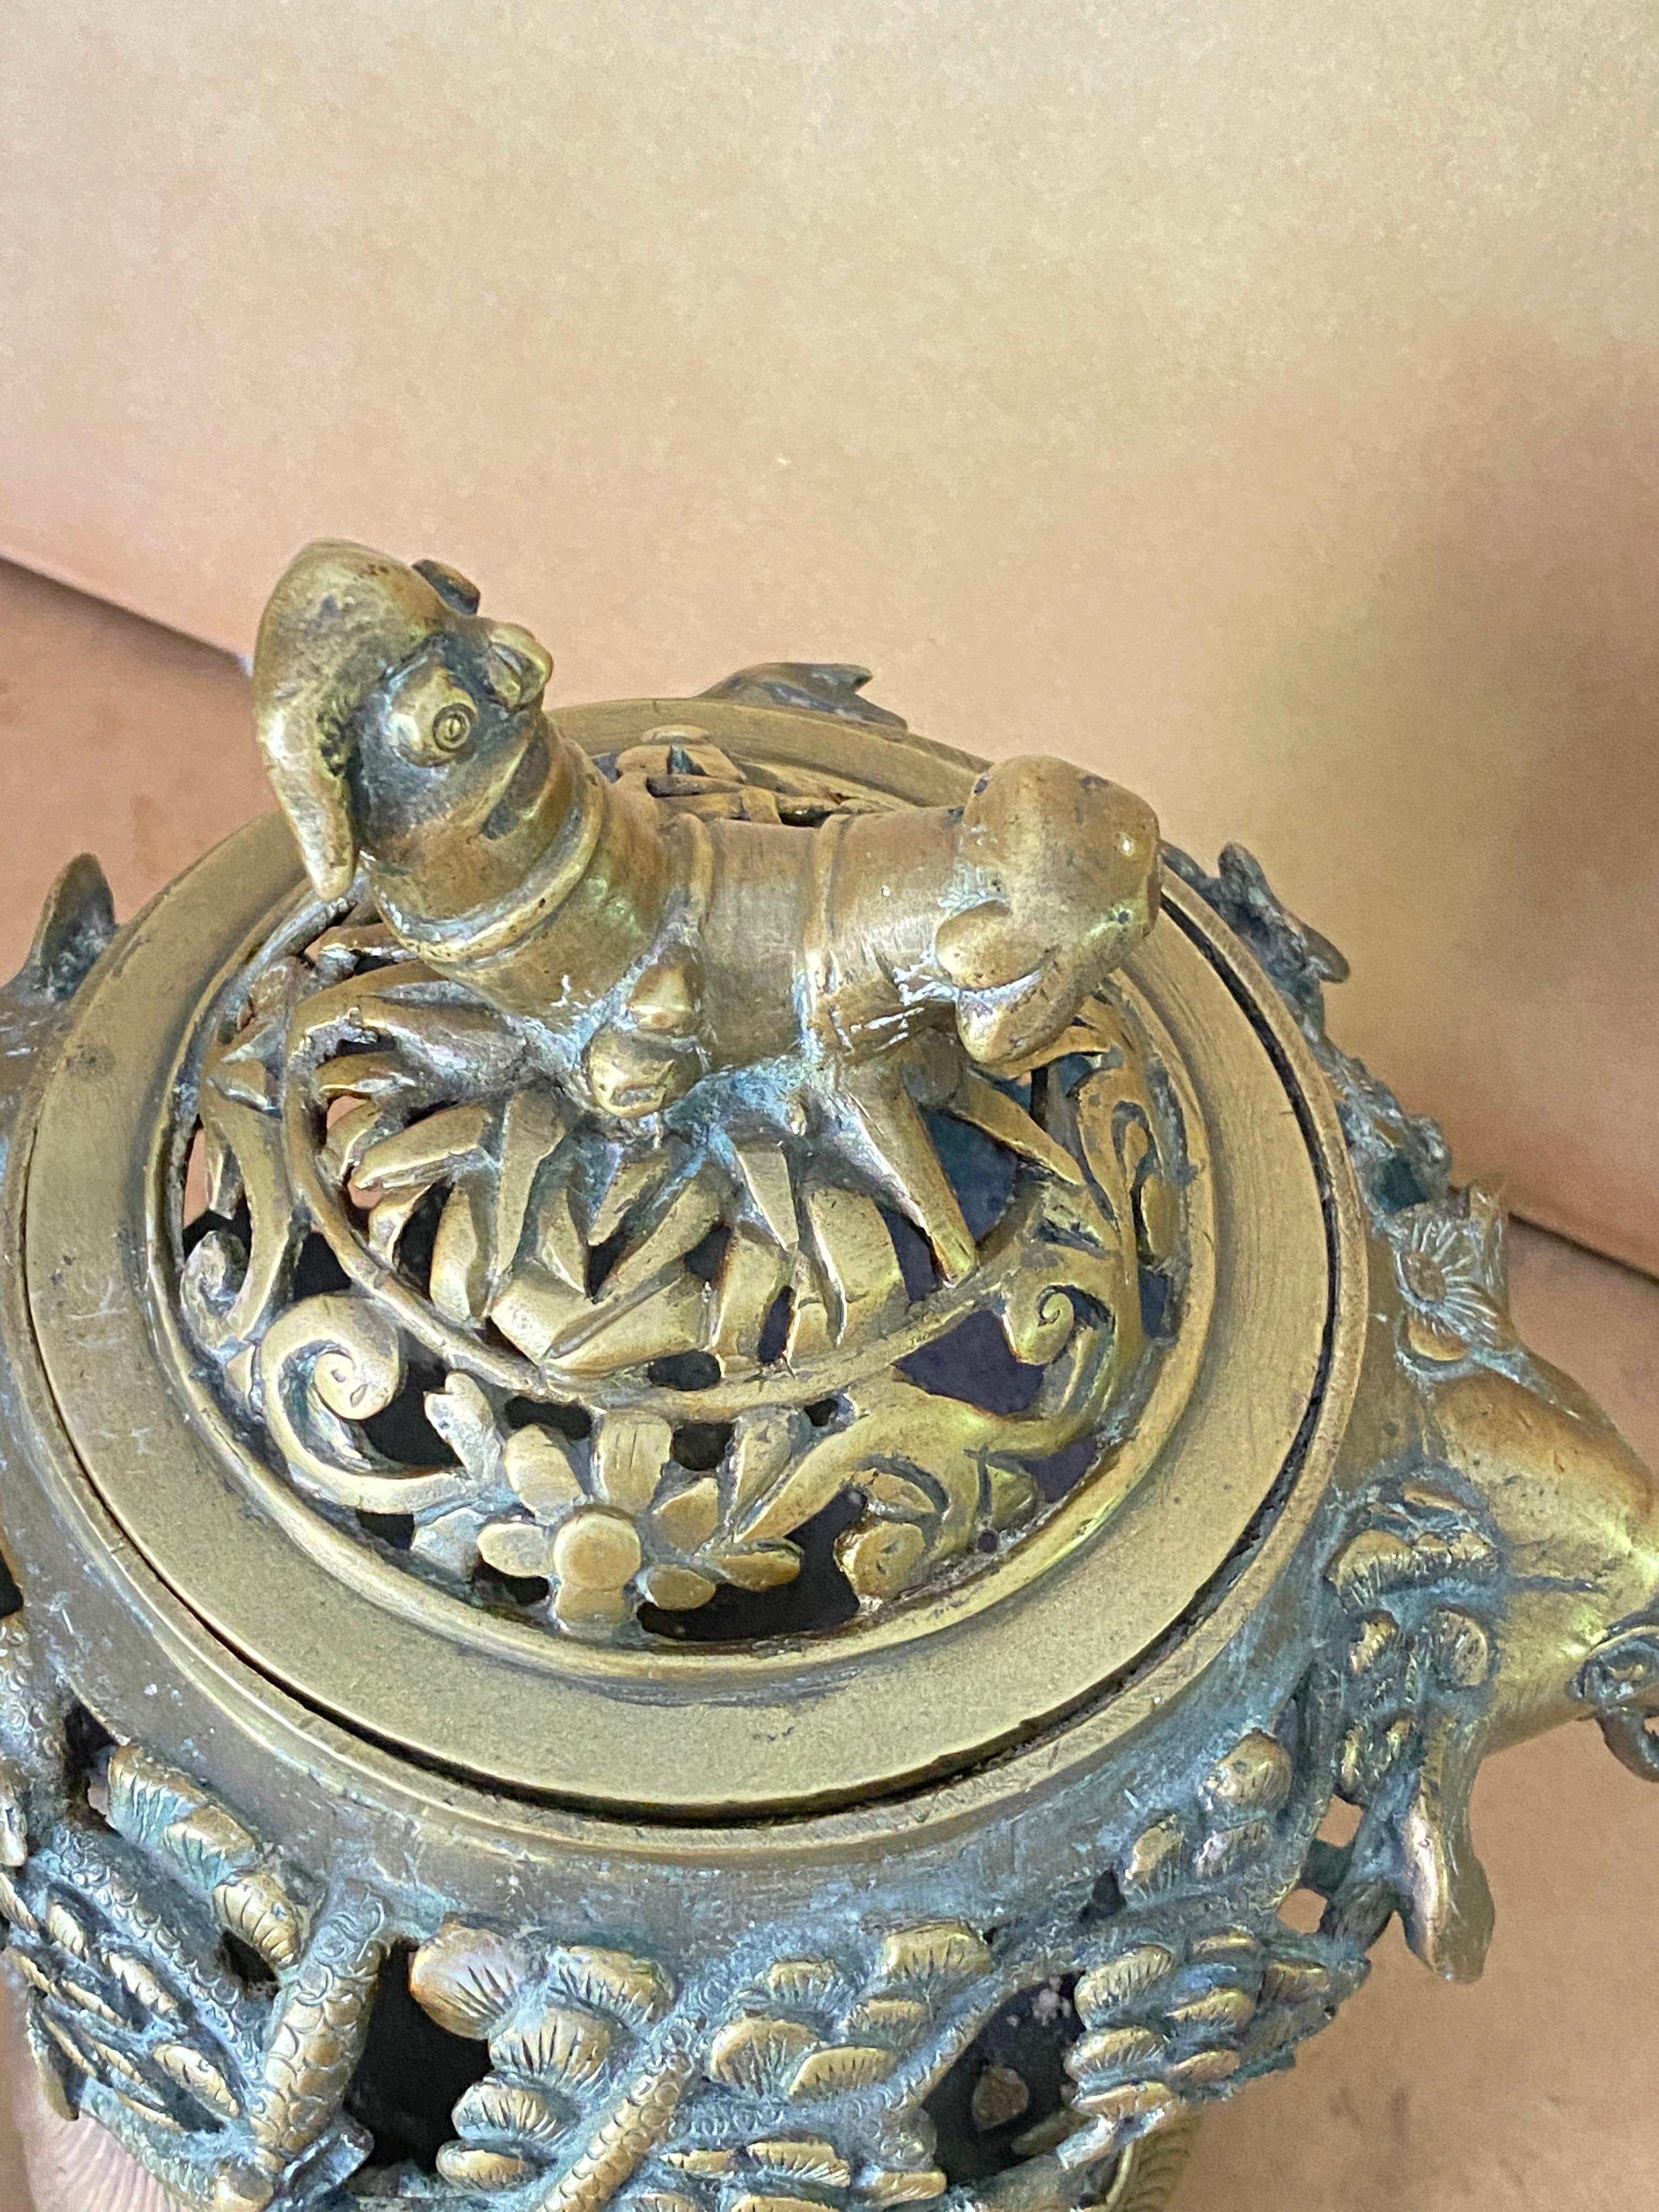 Brûleur d'encens, en bronze. Il a été fabriqué en Chine au 20ème siècle. On peut remarquer des éléphants, des chauves-souris et des pins comme décoration. Il se démonte en trois parties, et peut bien sûr être utilisé pour toutes sortes de choses,